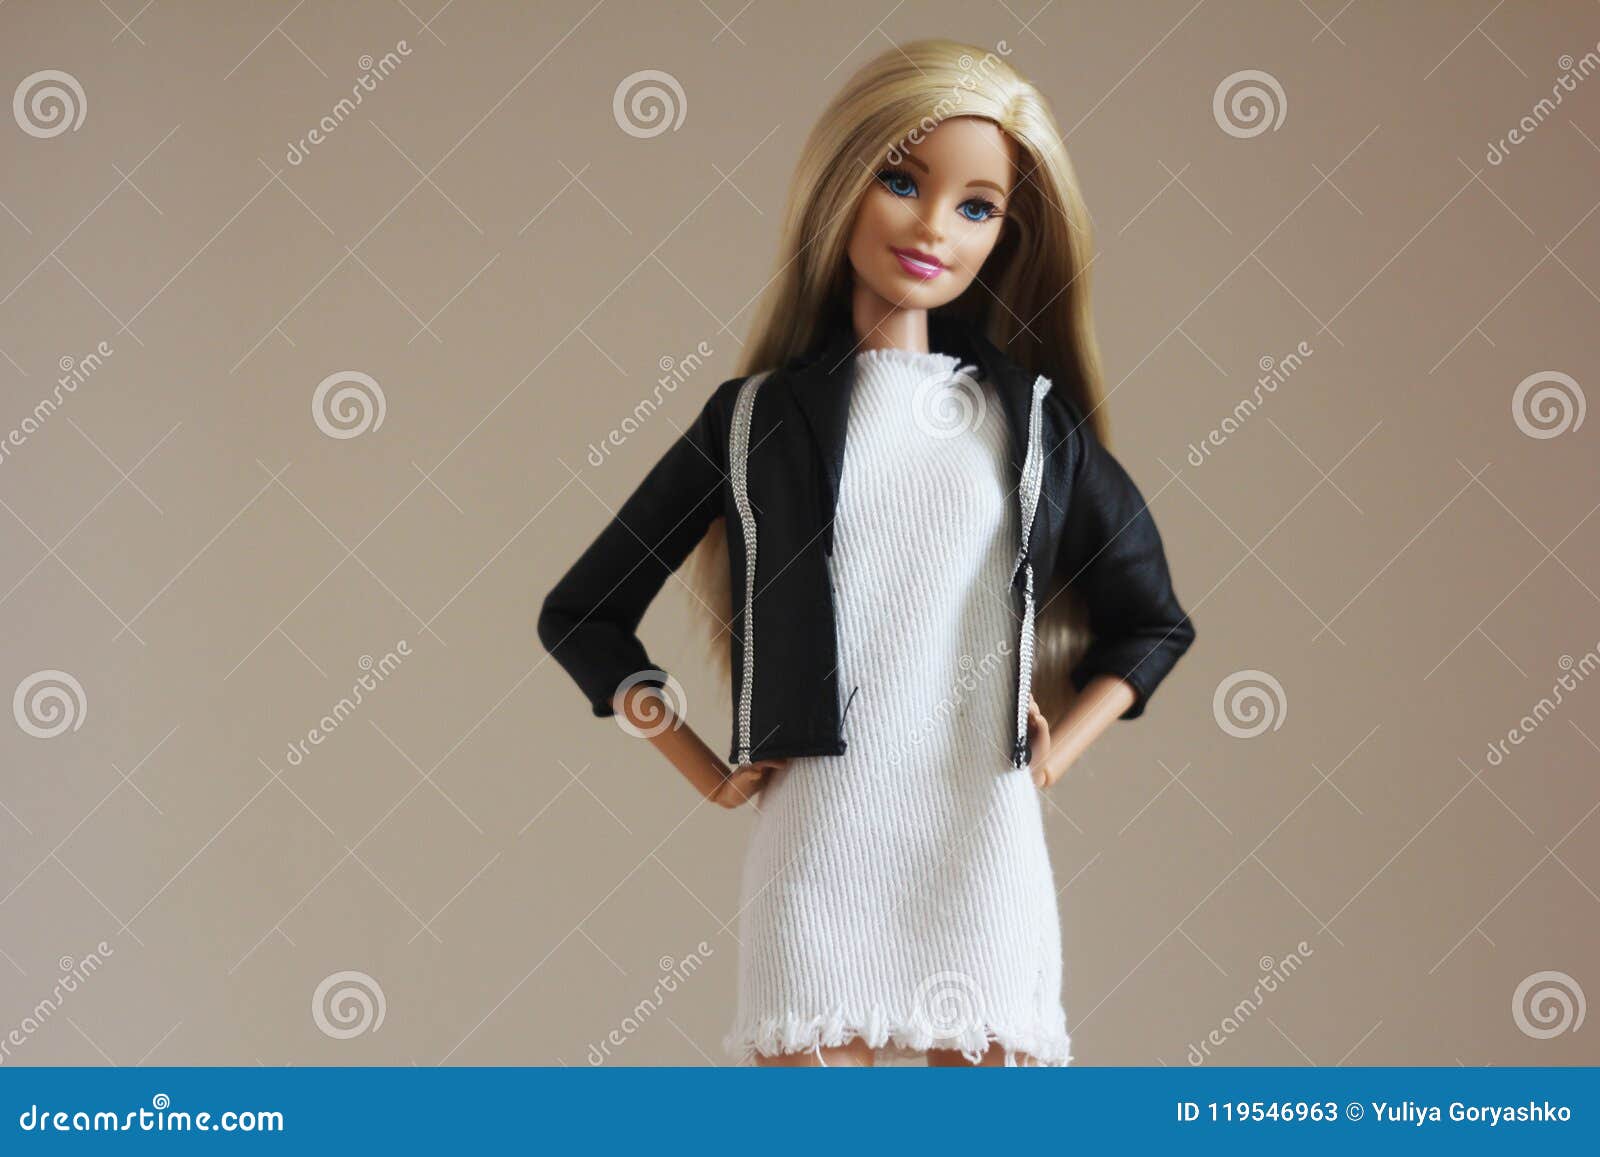 Moda 11.5 roupas de boneca para barbie vestido para bonecas